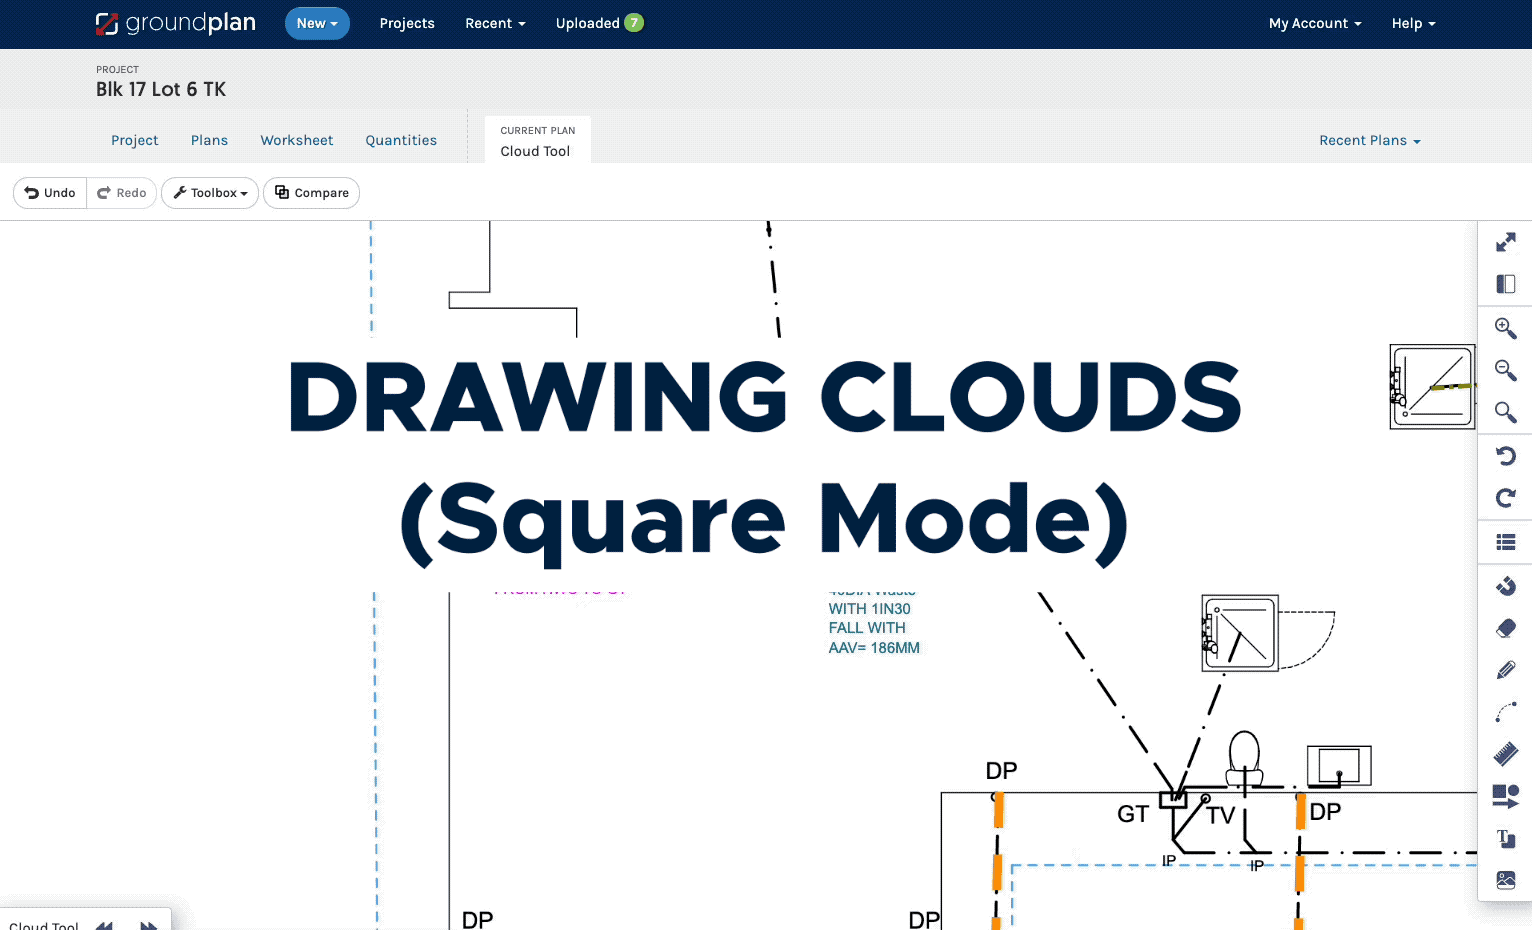 D1 - Square mode cloud